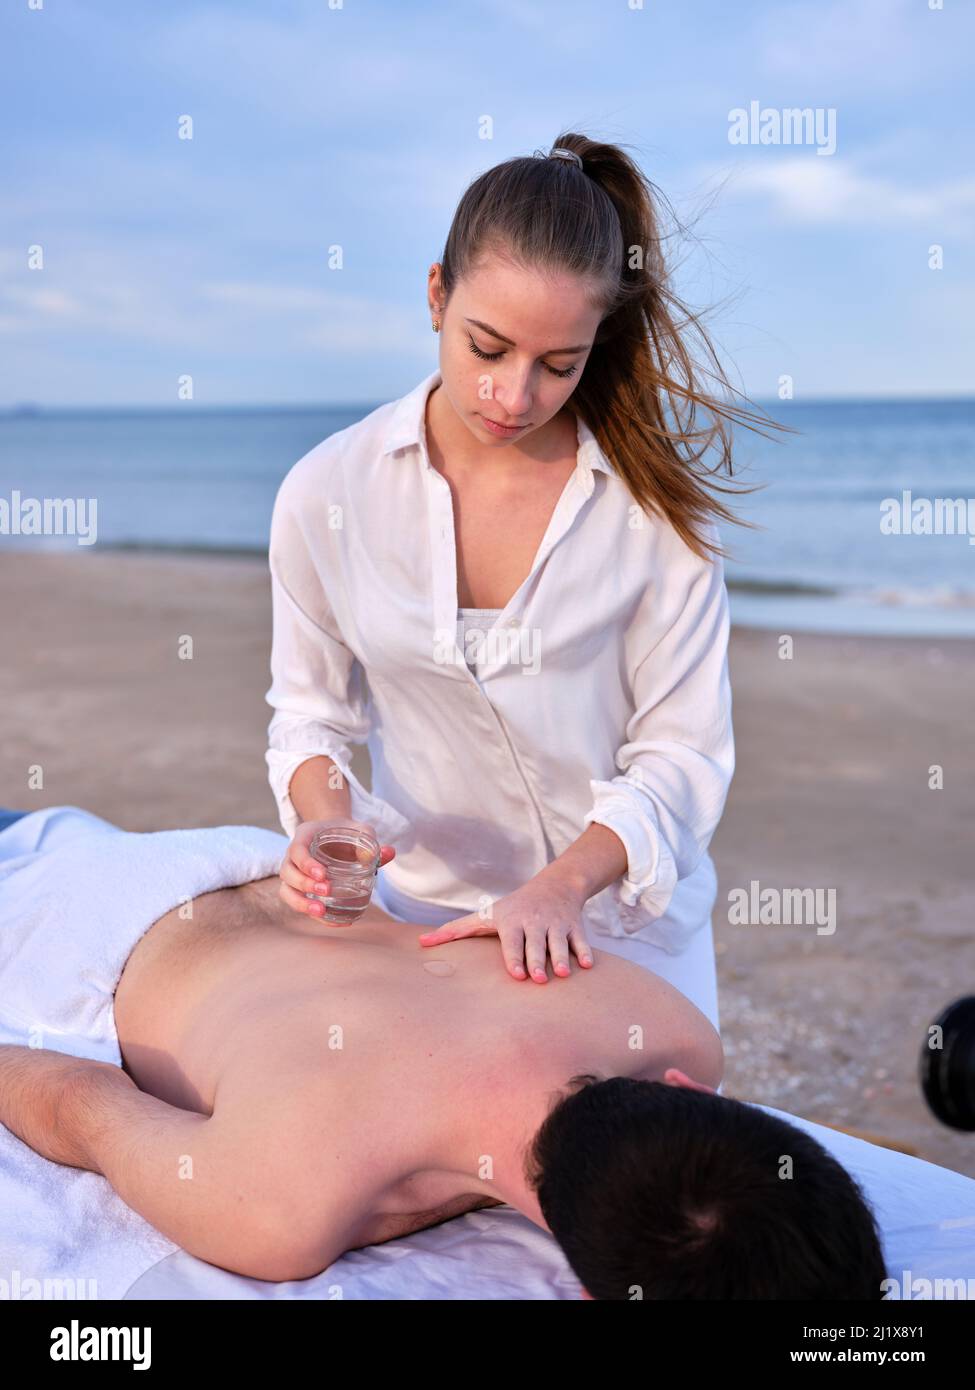 Ein junger Chiromassage-Therapeut gießt einem jungen Mann auf einem Massageliege am Strand von Valencia Öl auf den Rücken. Stockfoto